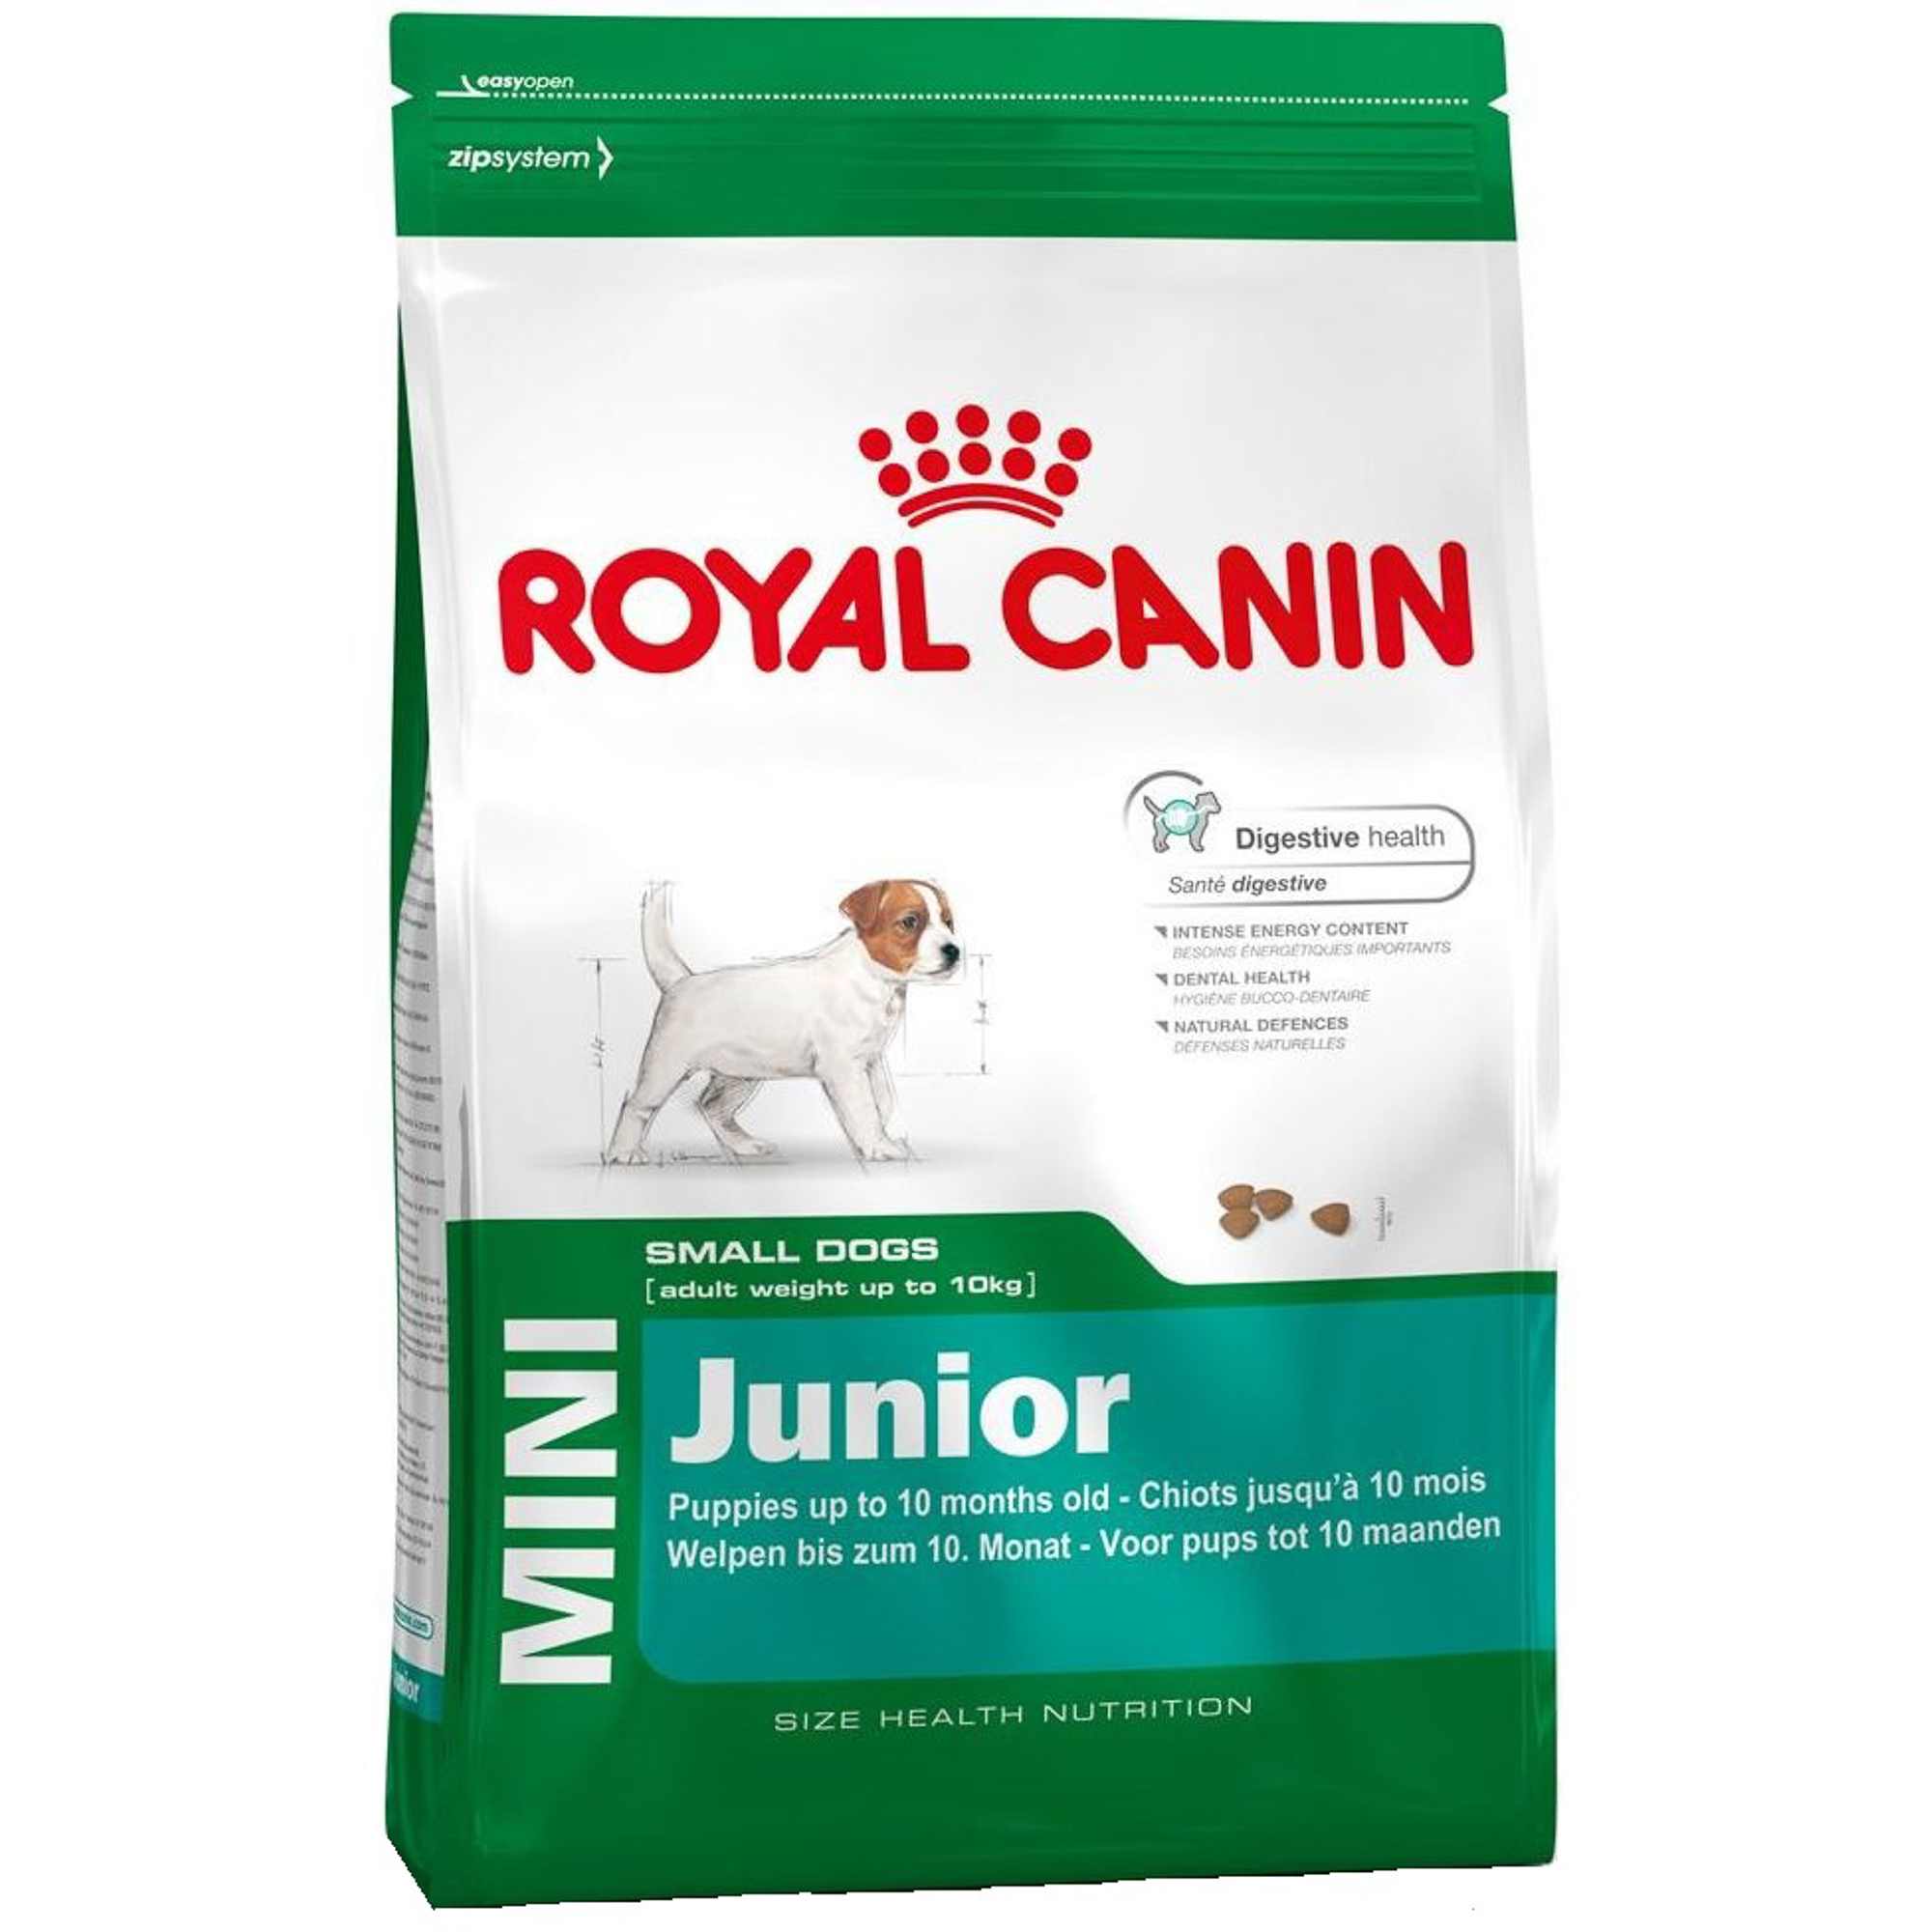 фото Корм для щенков royal canin junior для мелких пород, с 2 до 10 месяцев, 2 кг